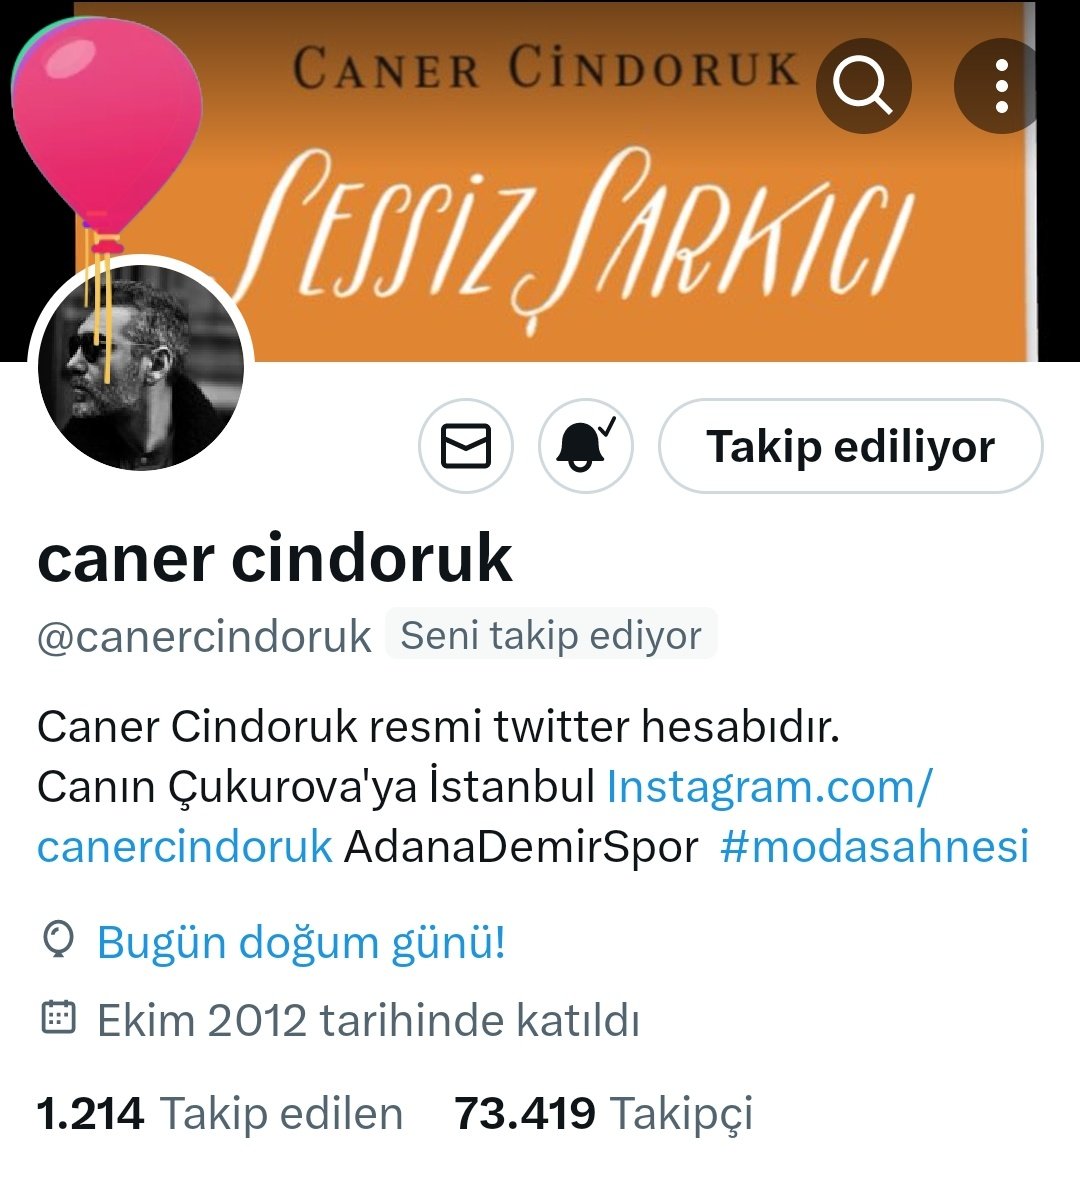 İyi ki bee 💙🎊 @canercindoruk abim doğum günün kutlu olsun 🍀hep mutlu ol